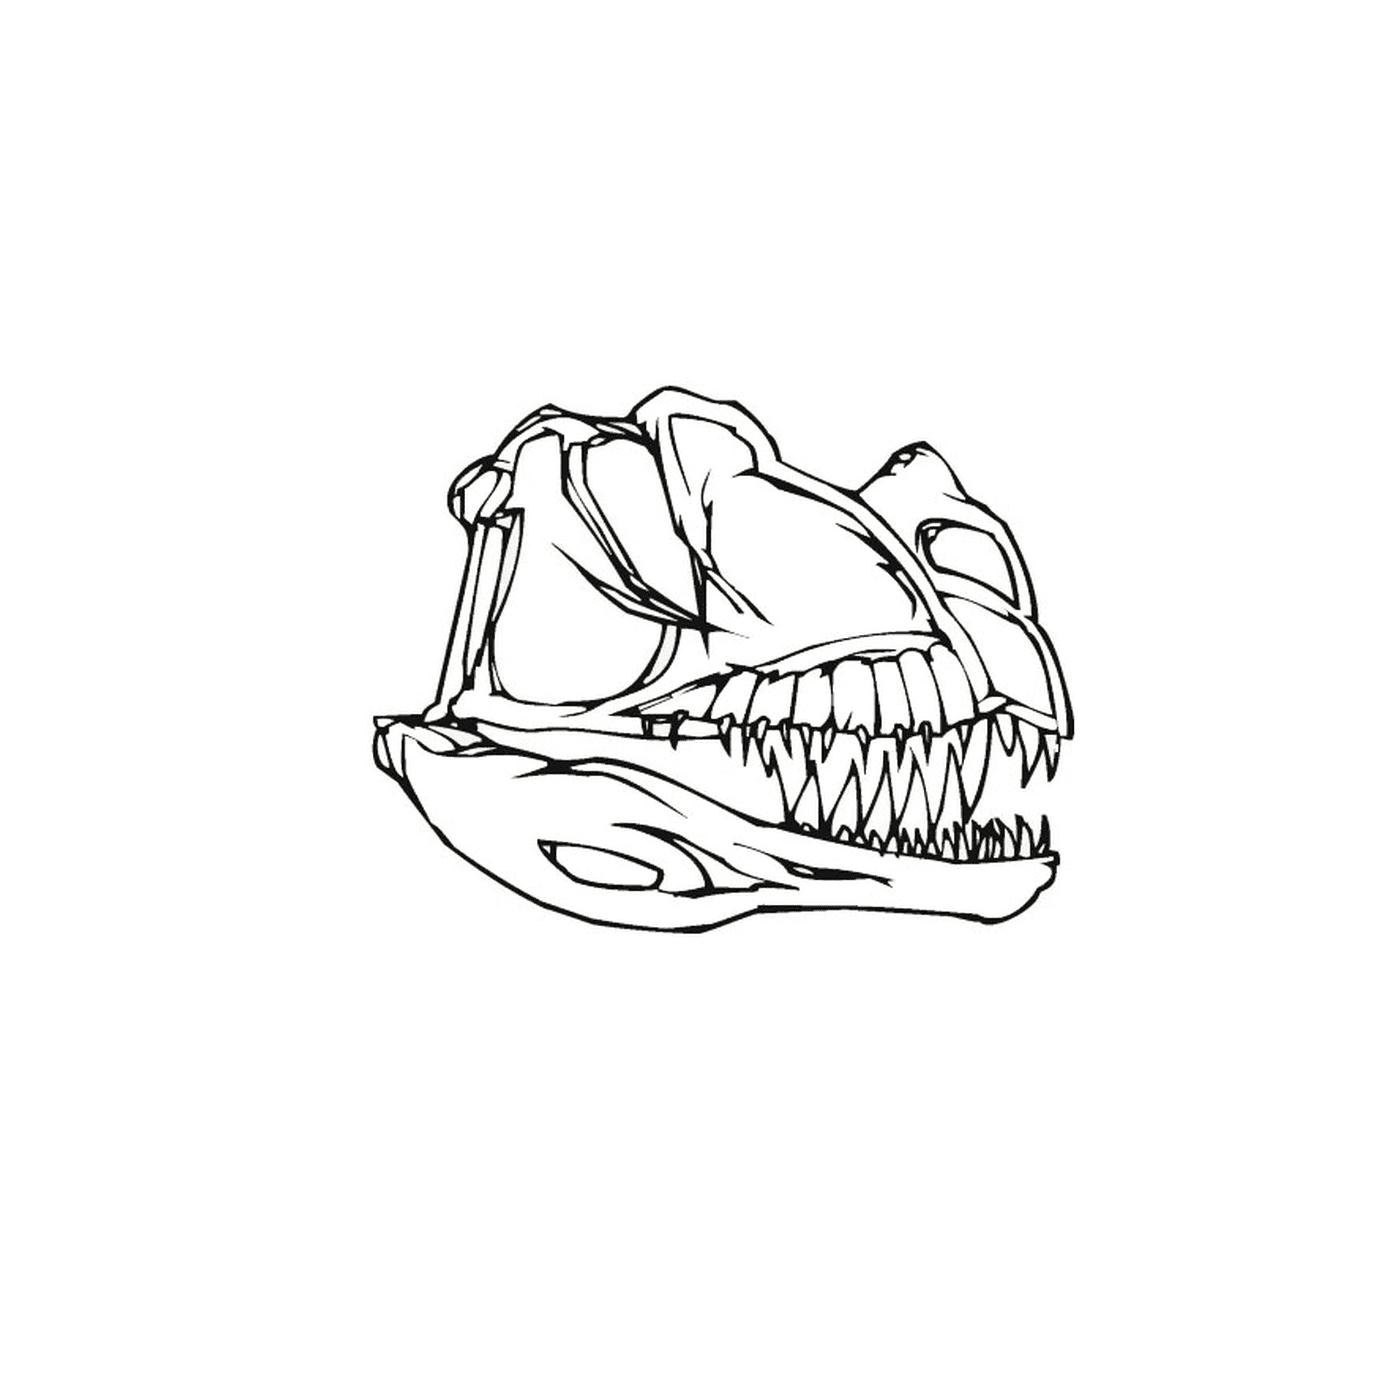  长着牙齿的恐龙的头骨 